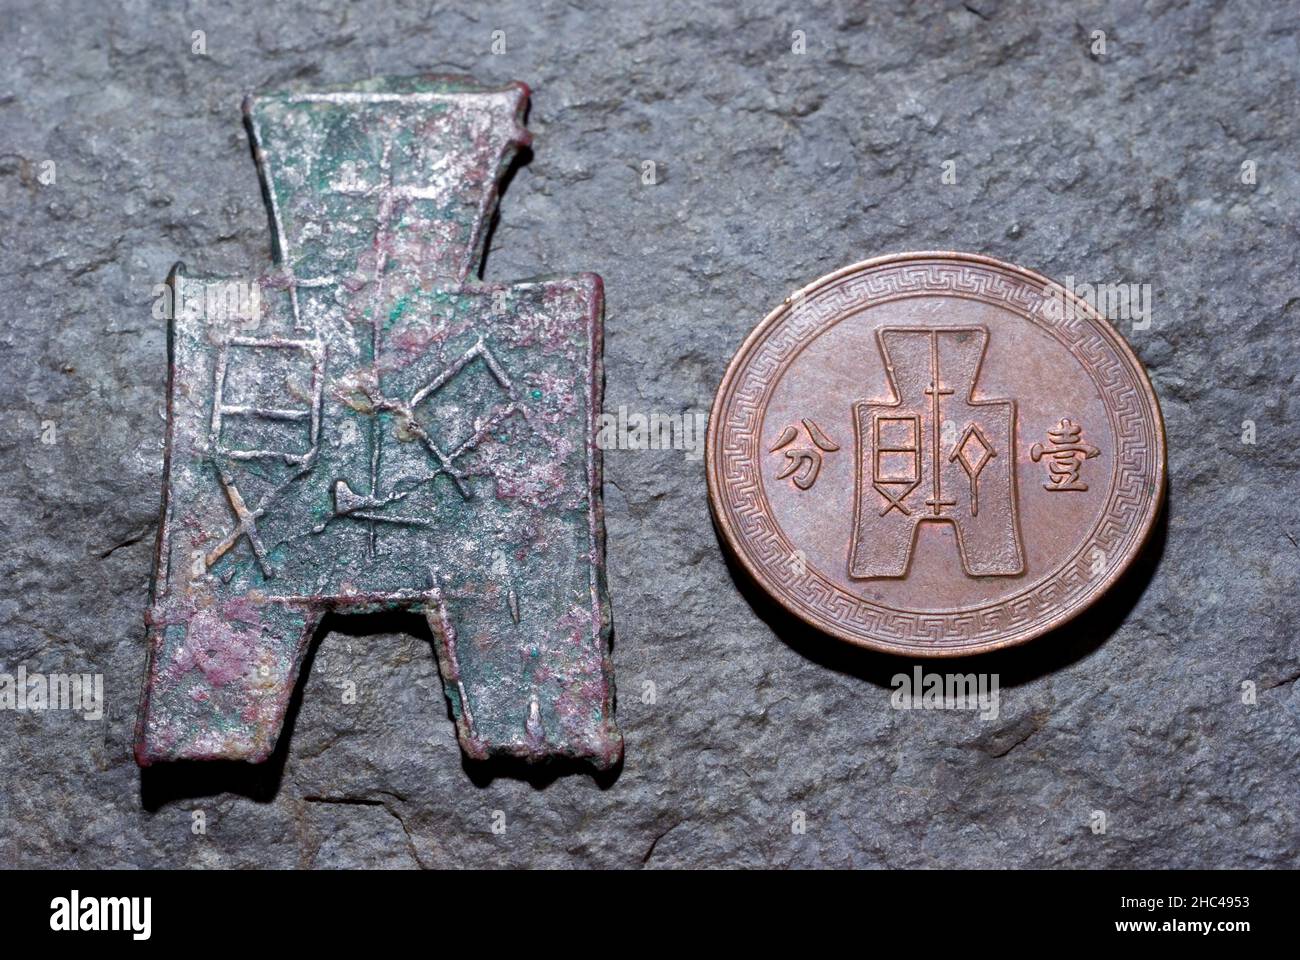 Kriegerische Staaten Spatenmünze & Münze der Republik China Stockfoto